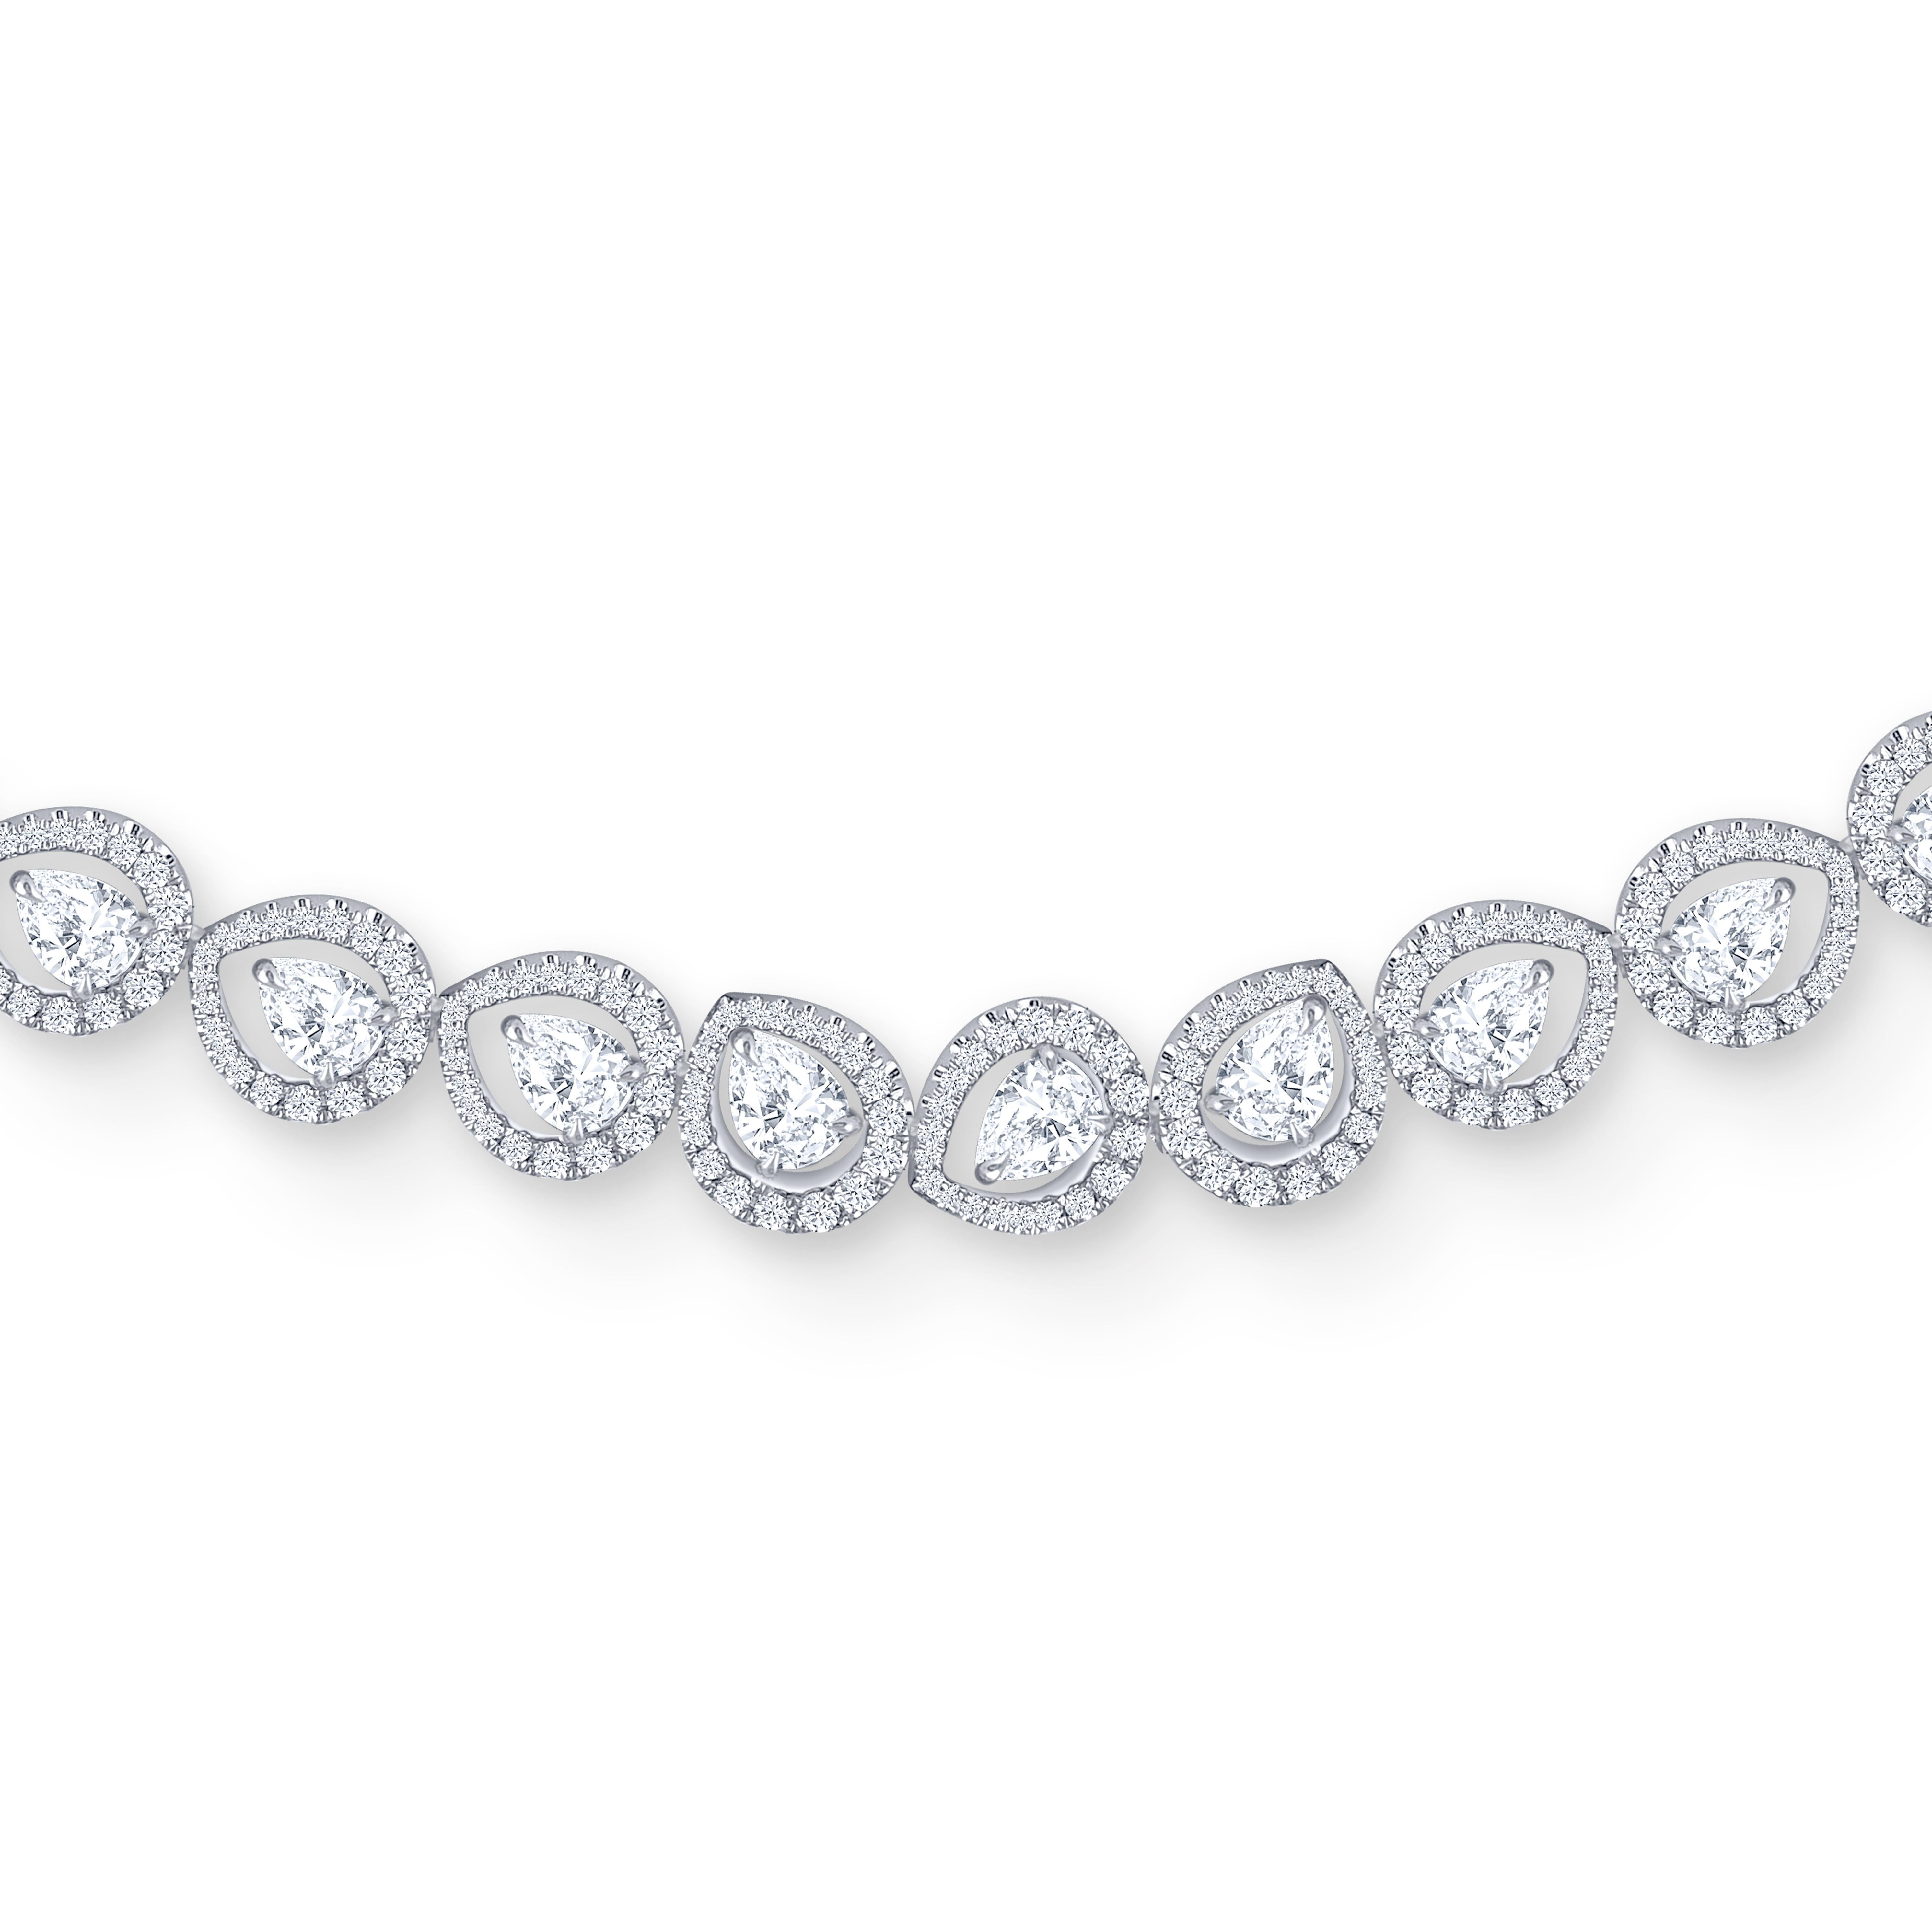 Diese handgefertigte Halskette ist wunderschön mit insgesamt 1066 natürlichen Diamanten der Farbe D-F und der Reinheit IF besetzt. 1008 runde und 58 birnenförmige Diamanten. Dieses Stück wird von einem HARAKH-Echtheitszertifikat und einer Reflection